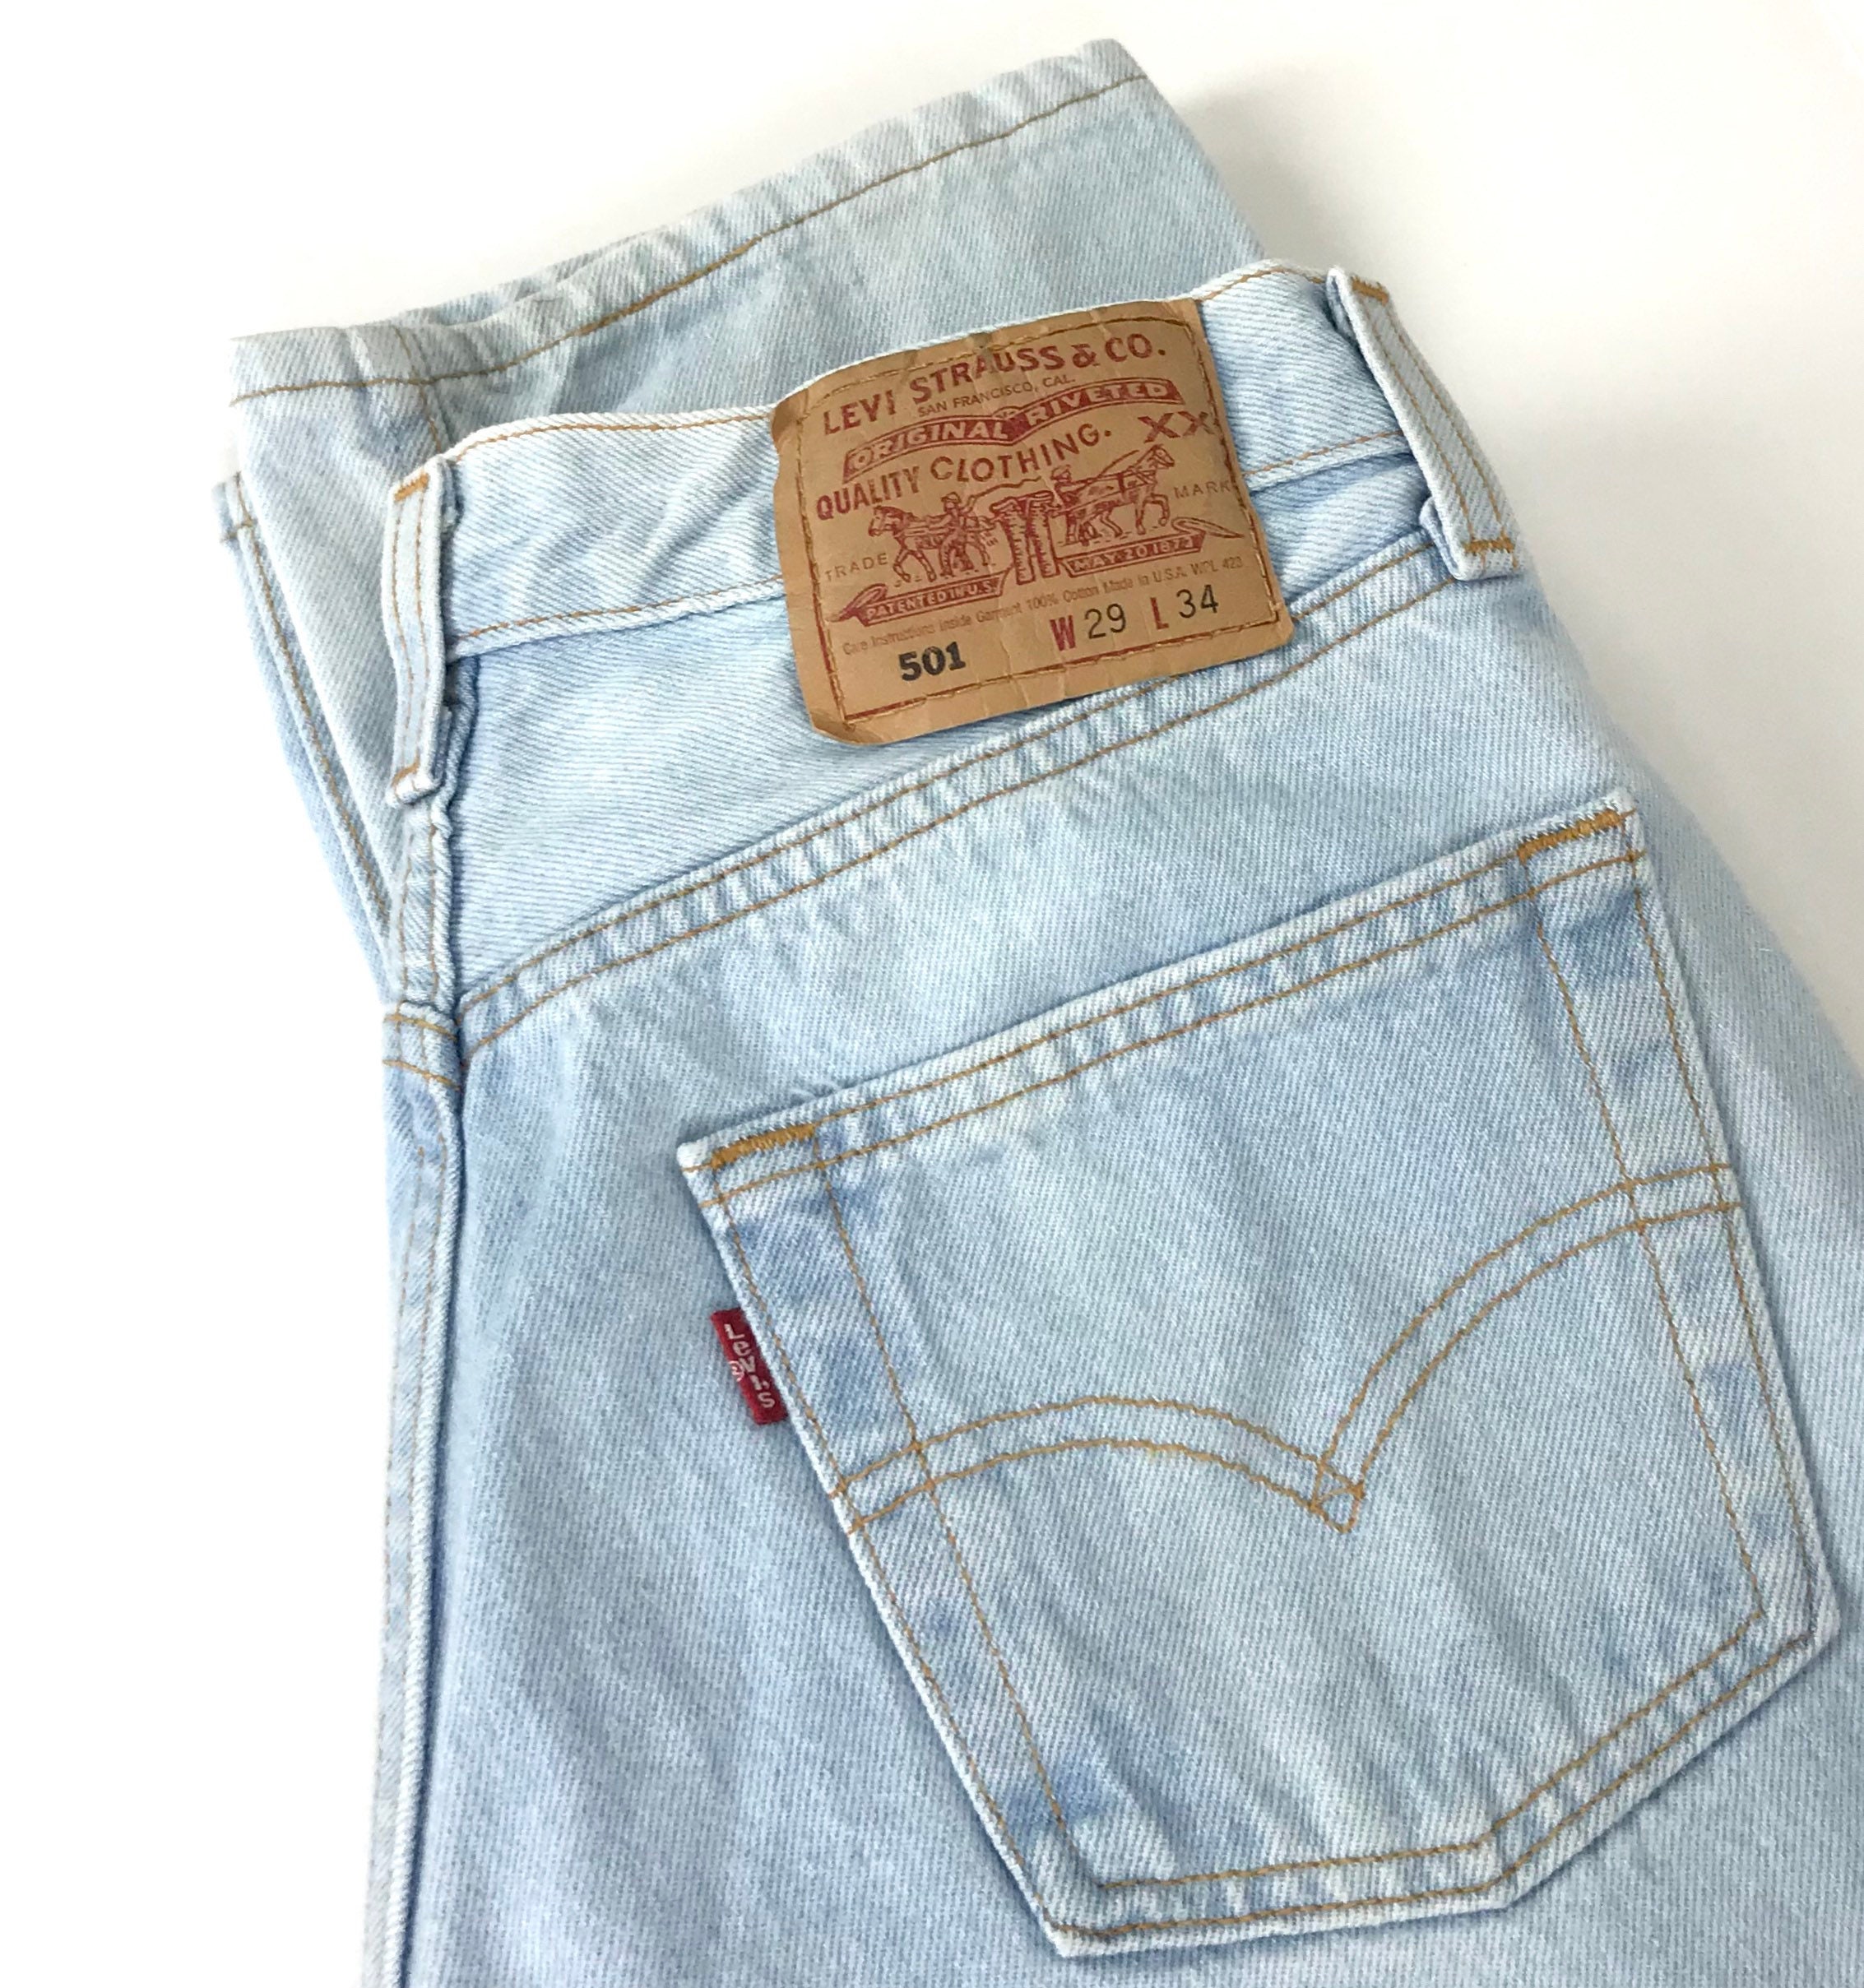 Levi's 501 Vintage Jeans / Size 25 26